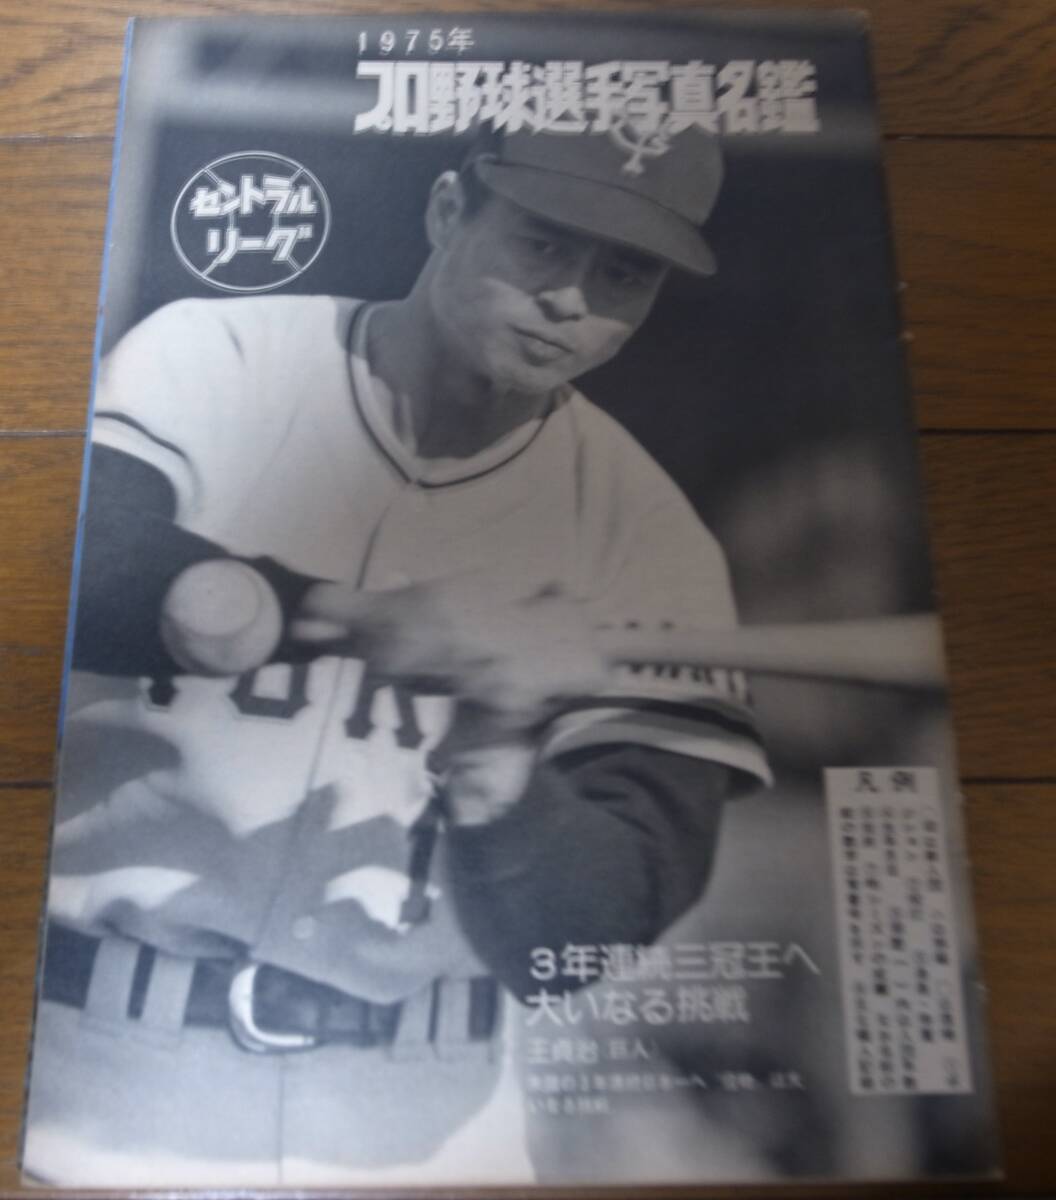  Showa 50 год еженедельный Baseball / Professional Baseball игрок фотография название ./ Hiroshima carp /. внезапный пятно -bs/ futoshi flat . Club лев z/ южные моря Hawk s